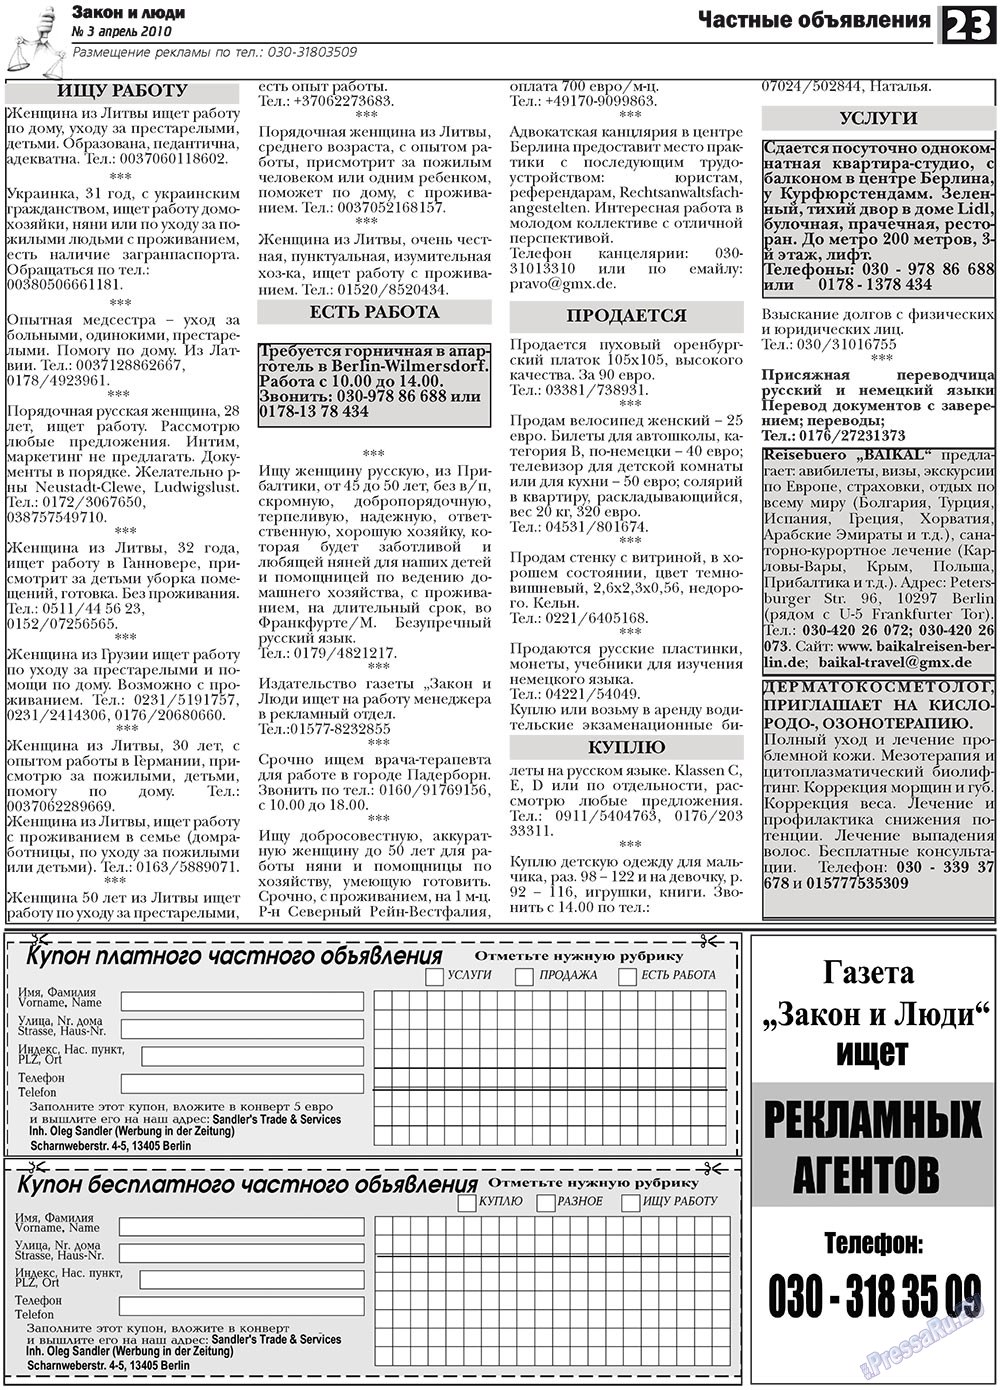 Закон и люди, газета. 2010 №3 стр.23